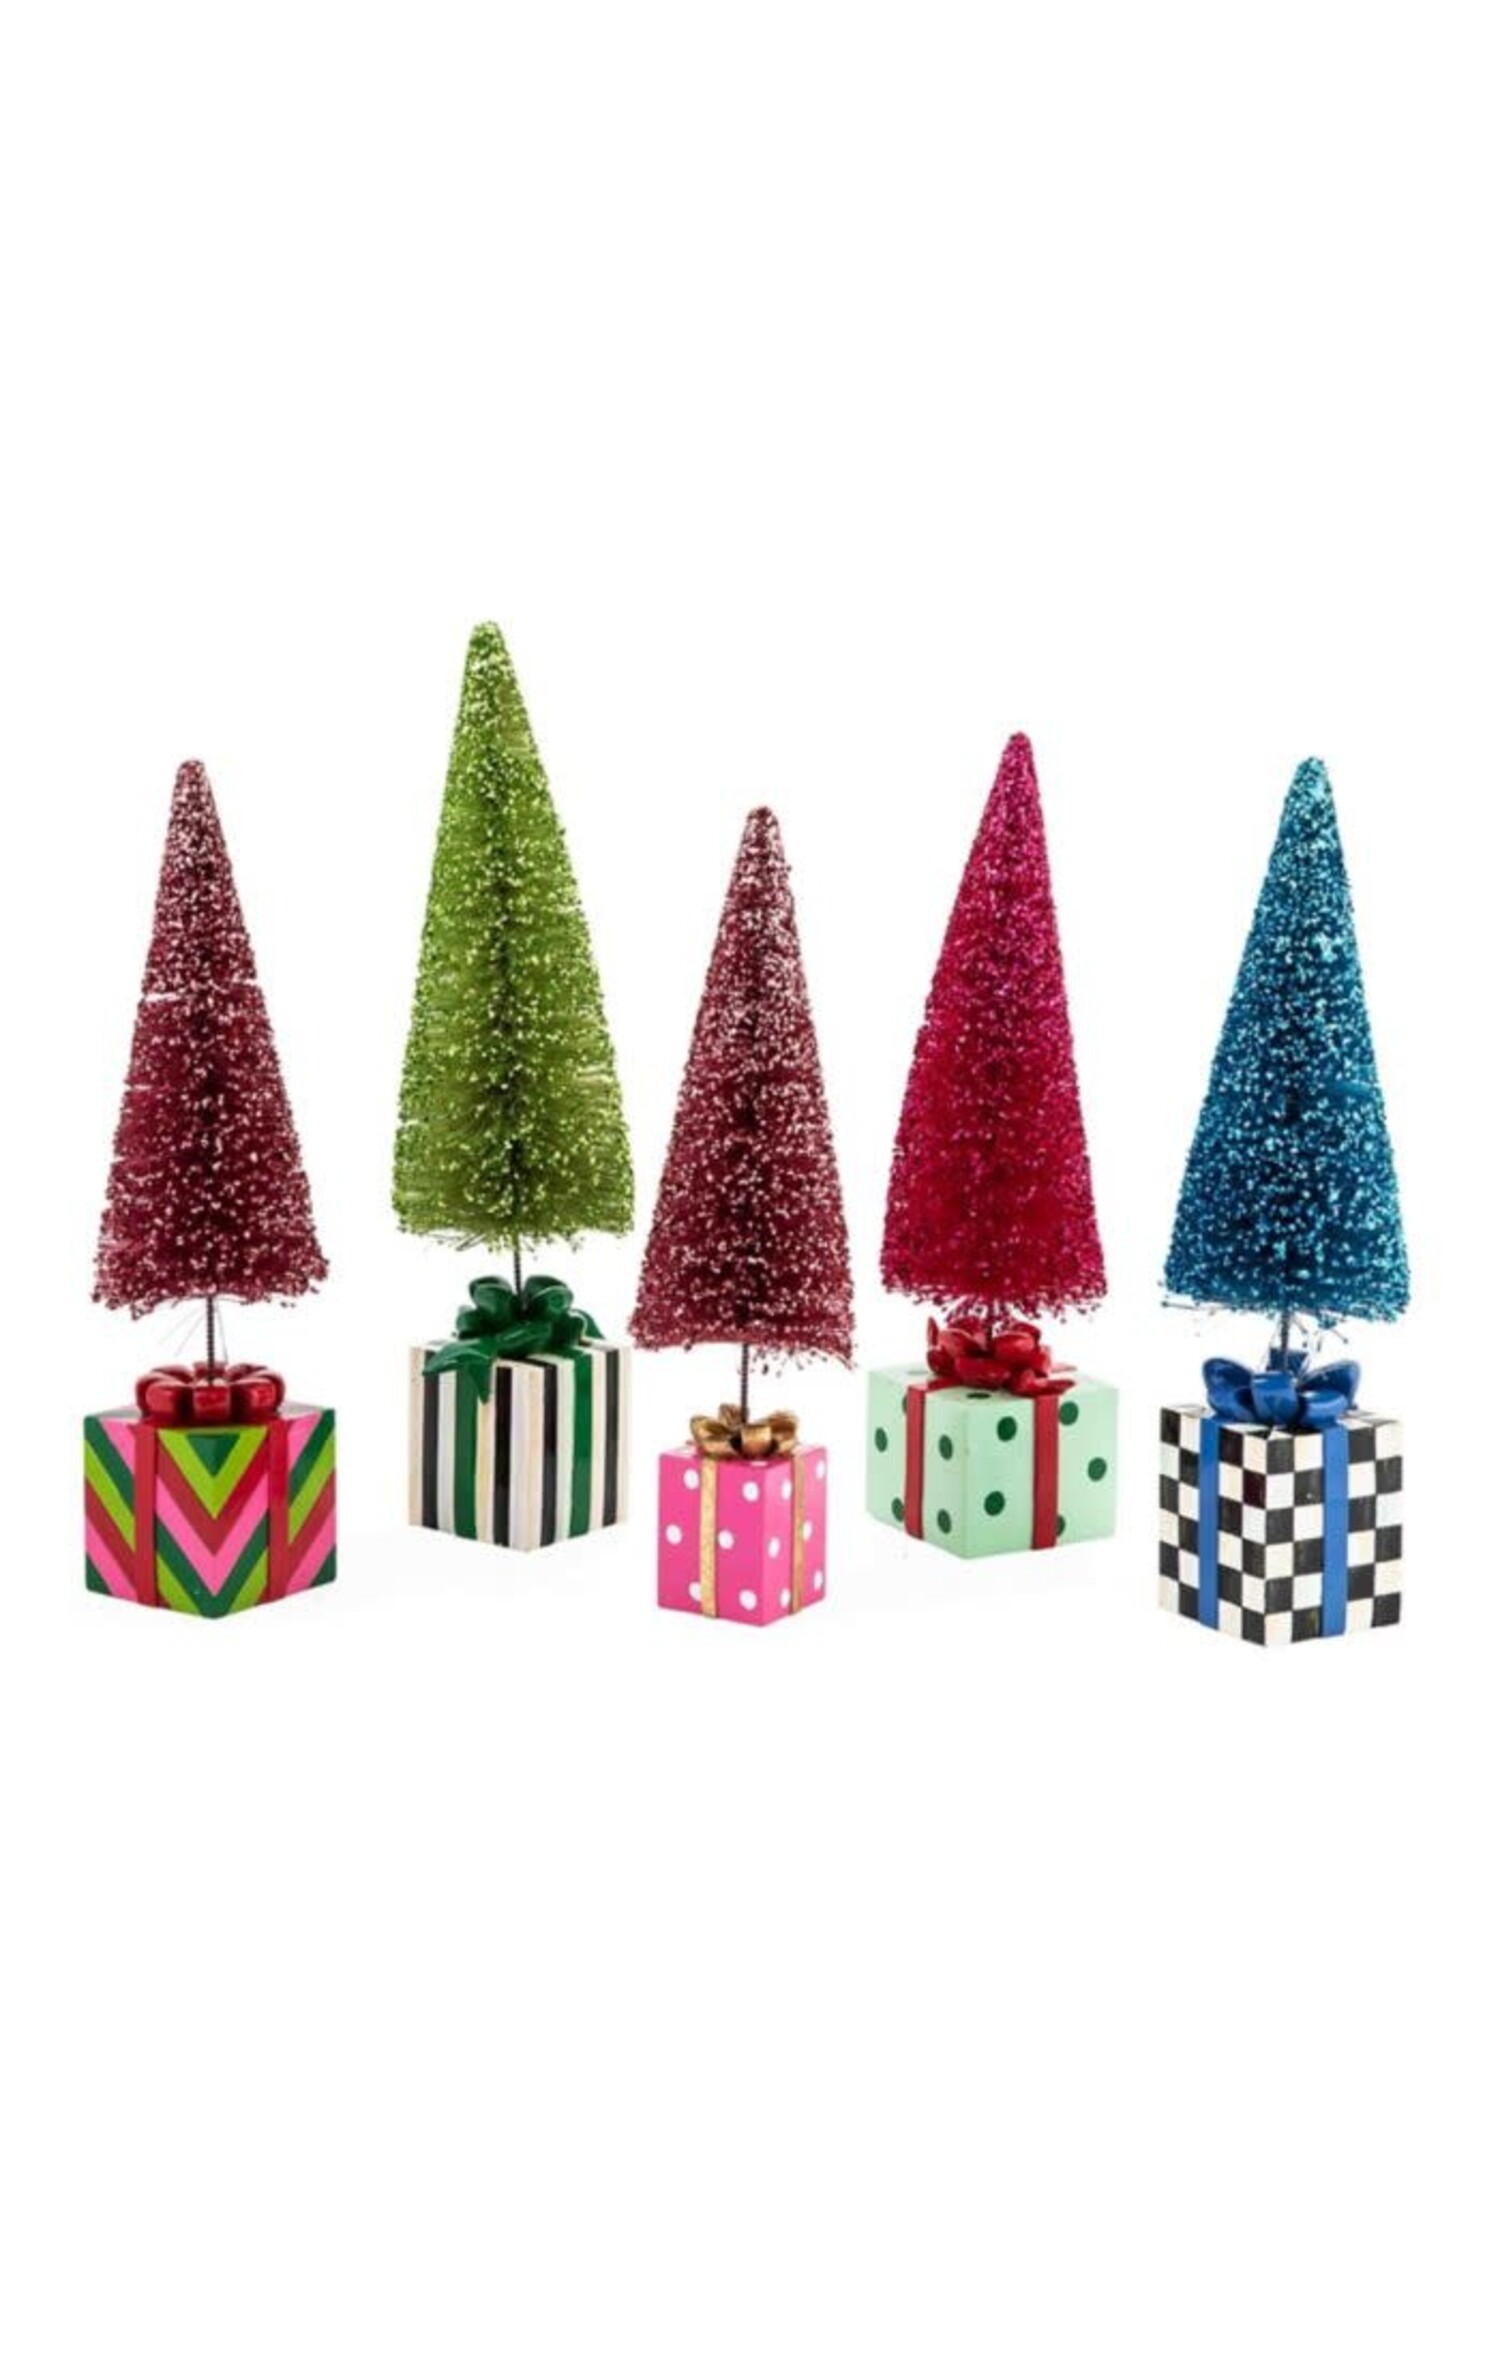 https://cdn.shoplightspeed.com/shops/606996/files/57888766/1500x4000x3/granny-kitsch-bottle-brush-gift-trees.jpg